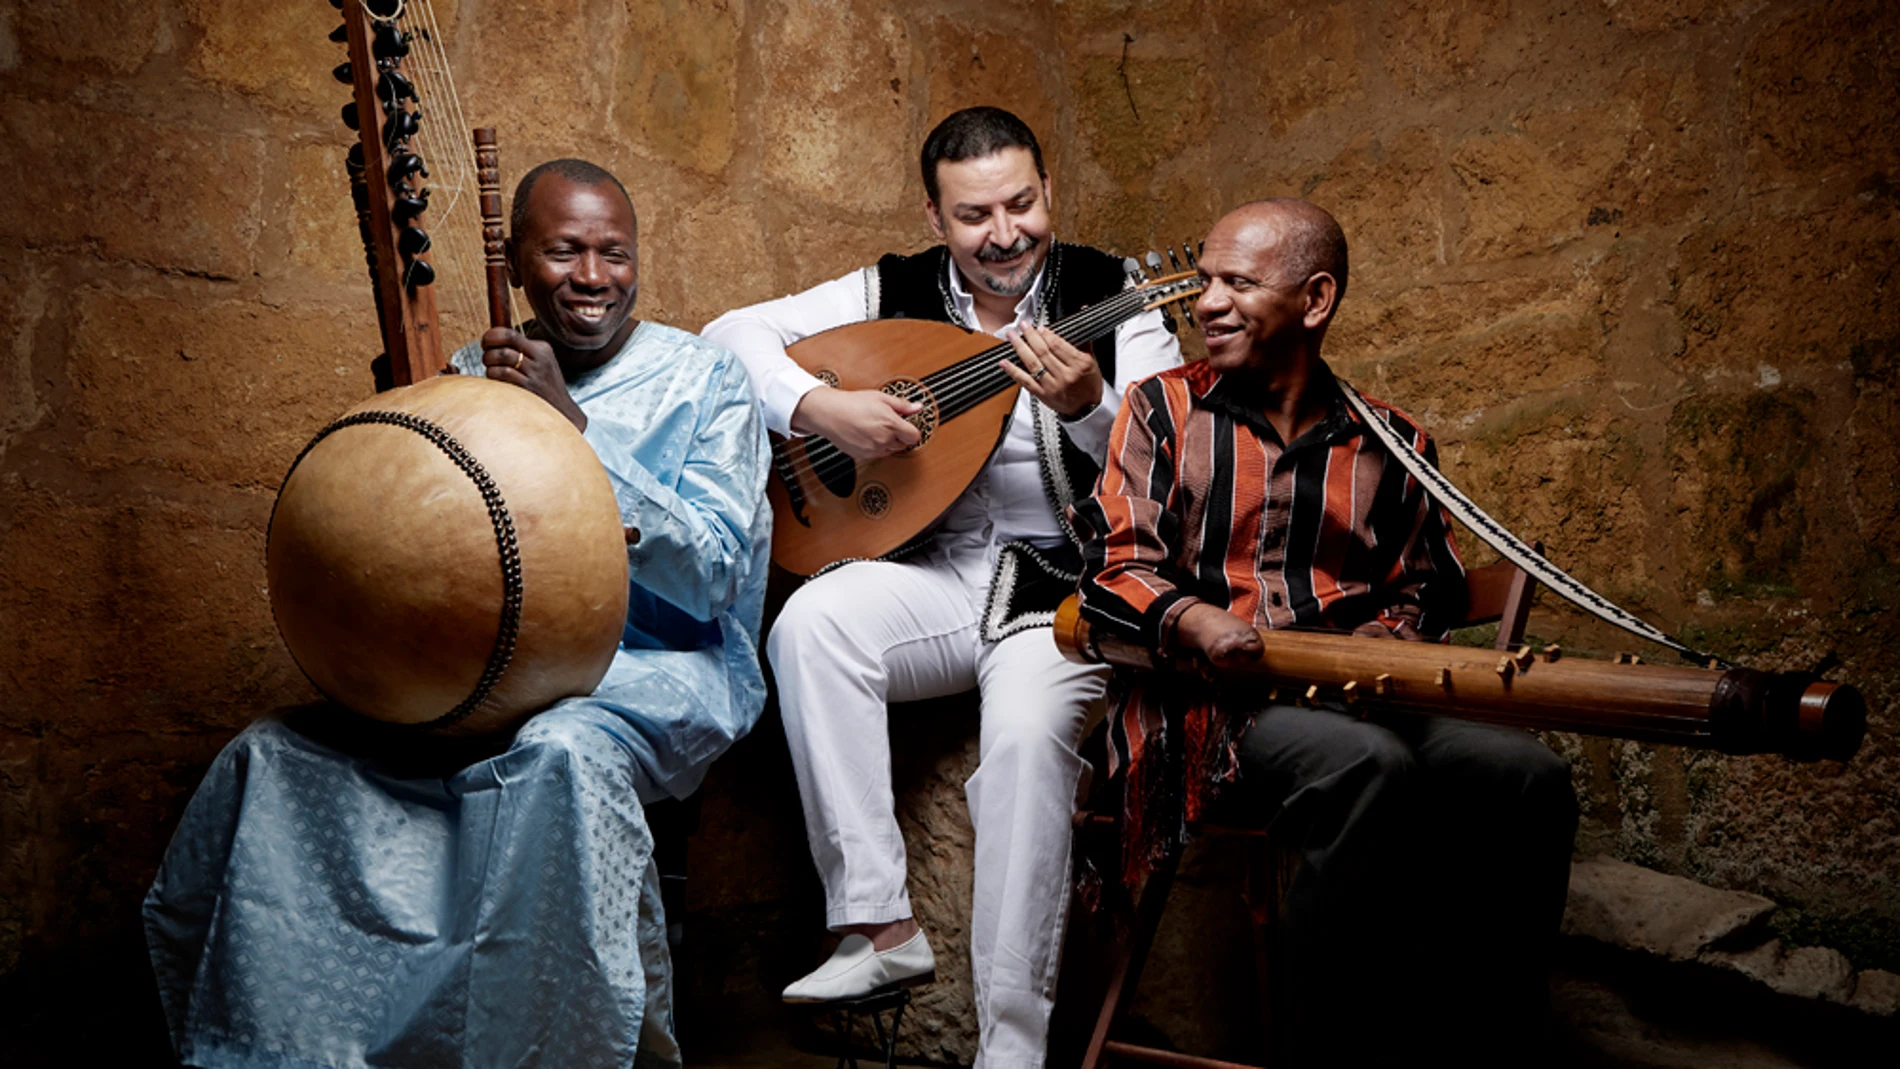 Ballake Sissoko, Driss El Maloumi y Rajery, el grupo africano 3MA, tocará el 15 de Marzo en el CaixaForum Sevilla